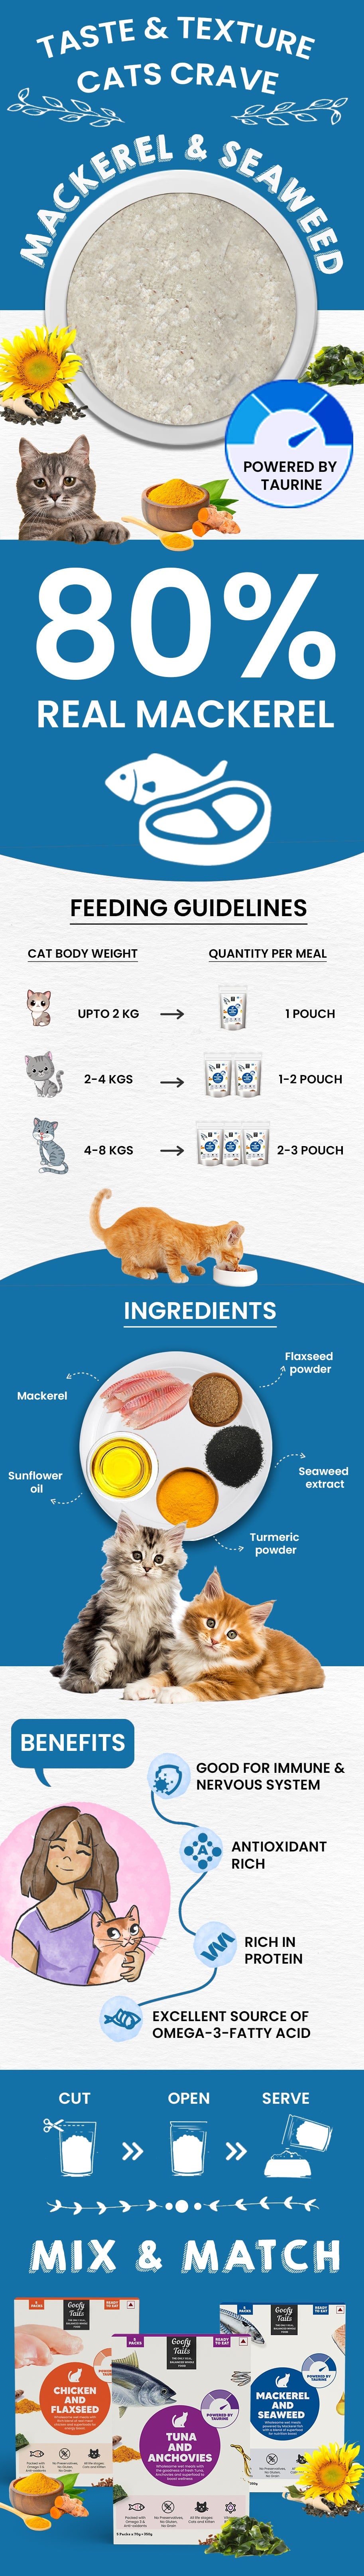 Wet Cat Meal-Mackerel